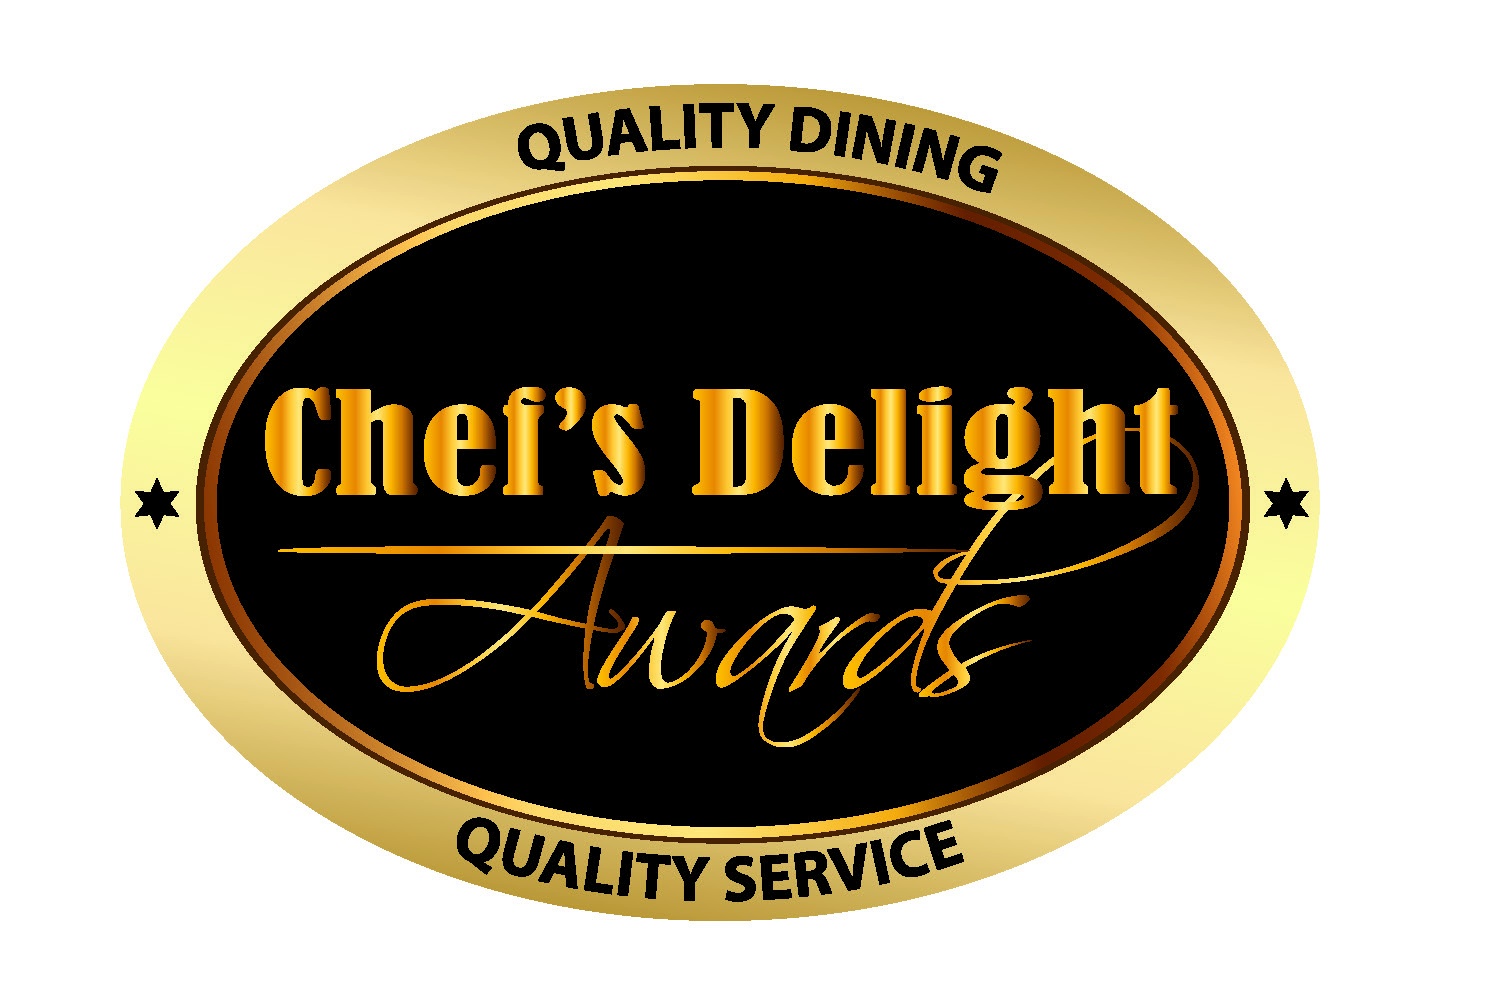 chefs delight logo